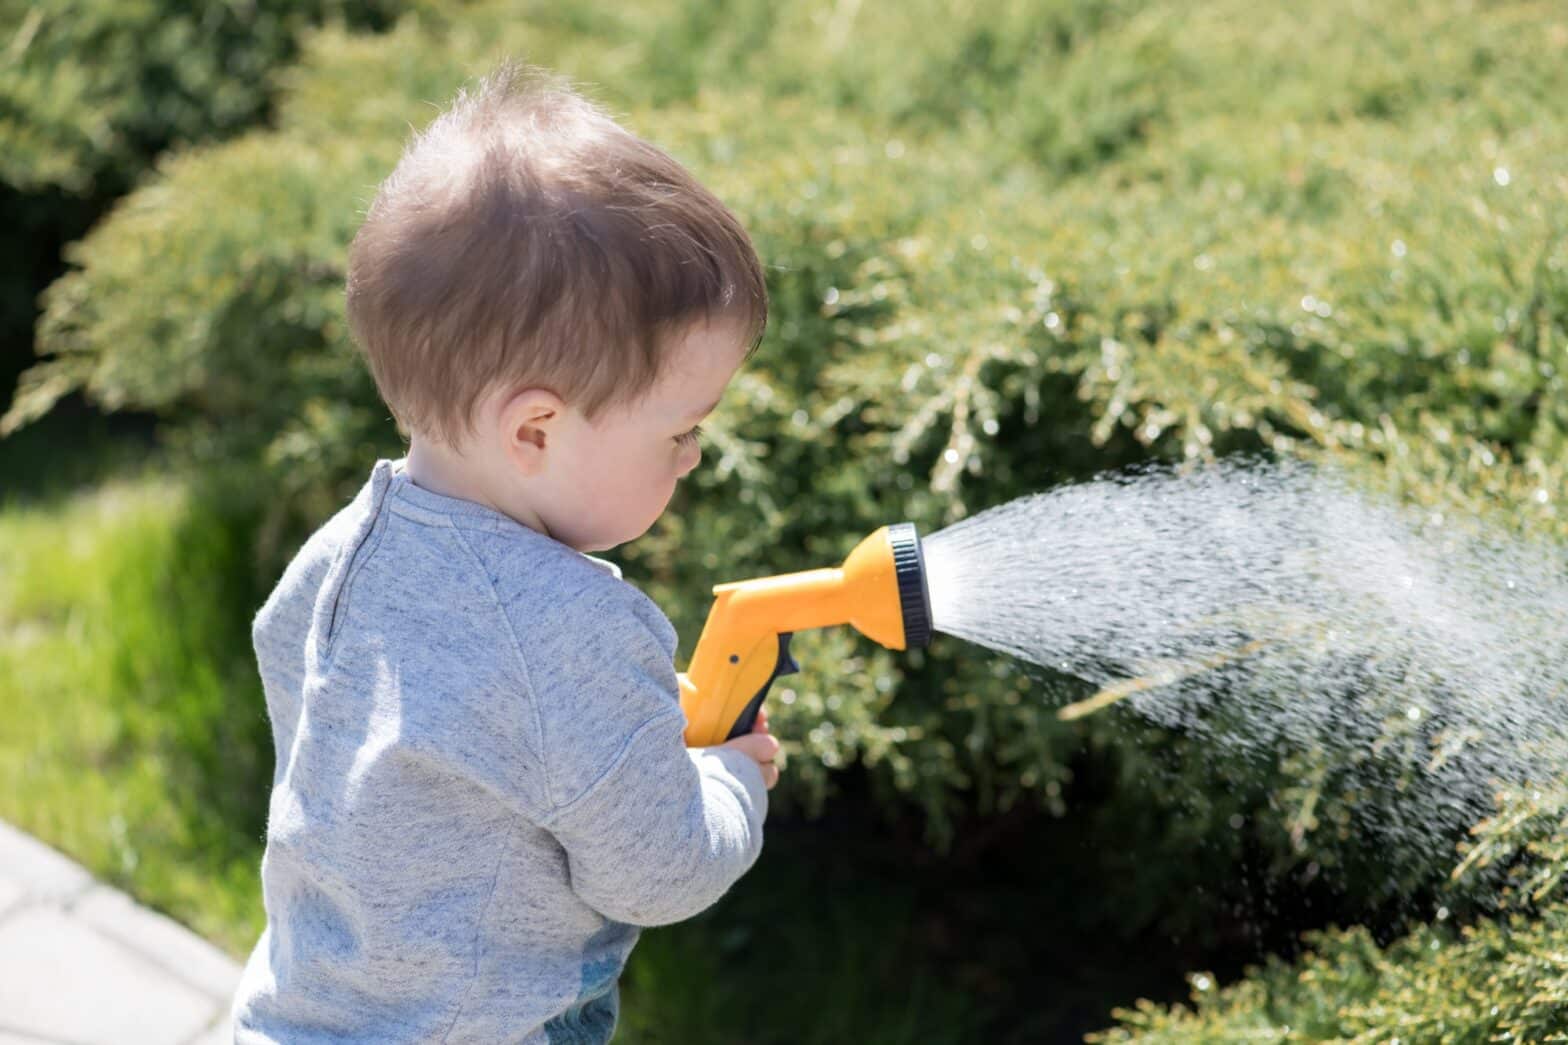 A boy watering soil